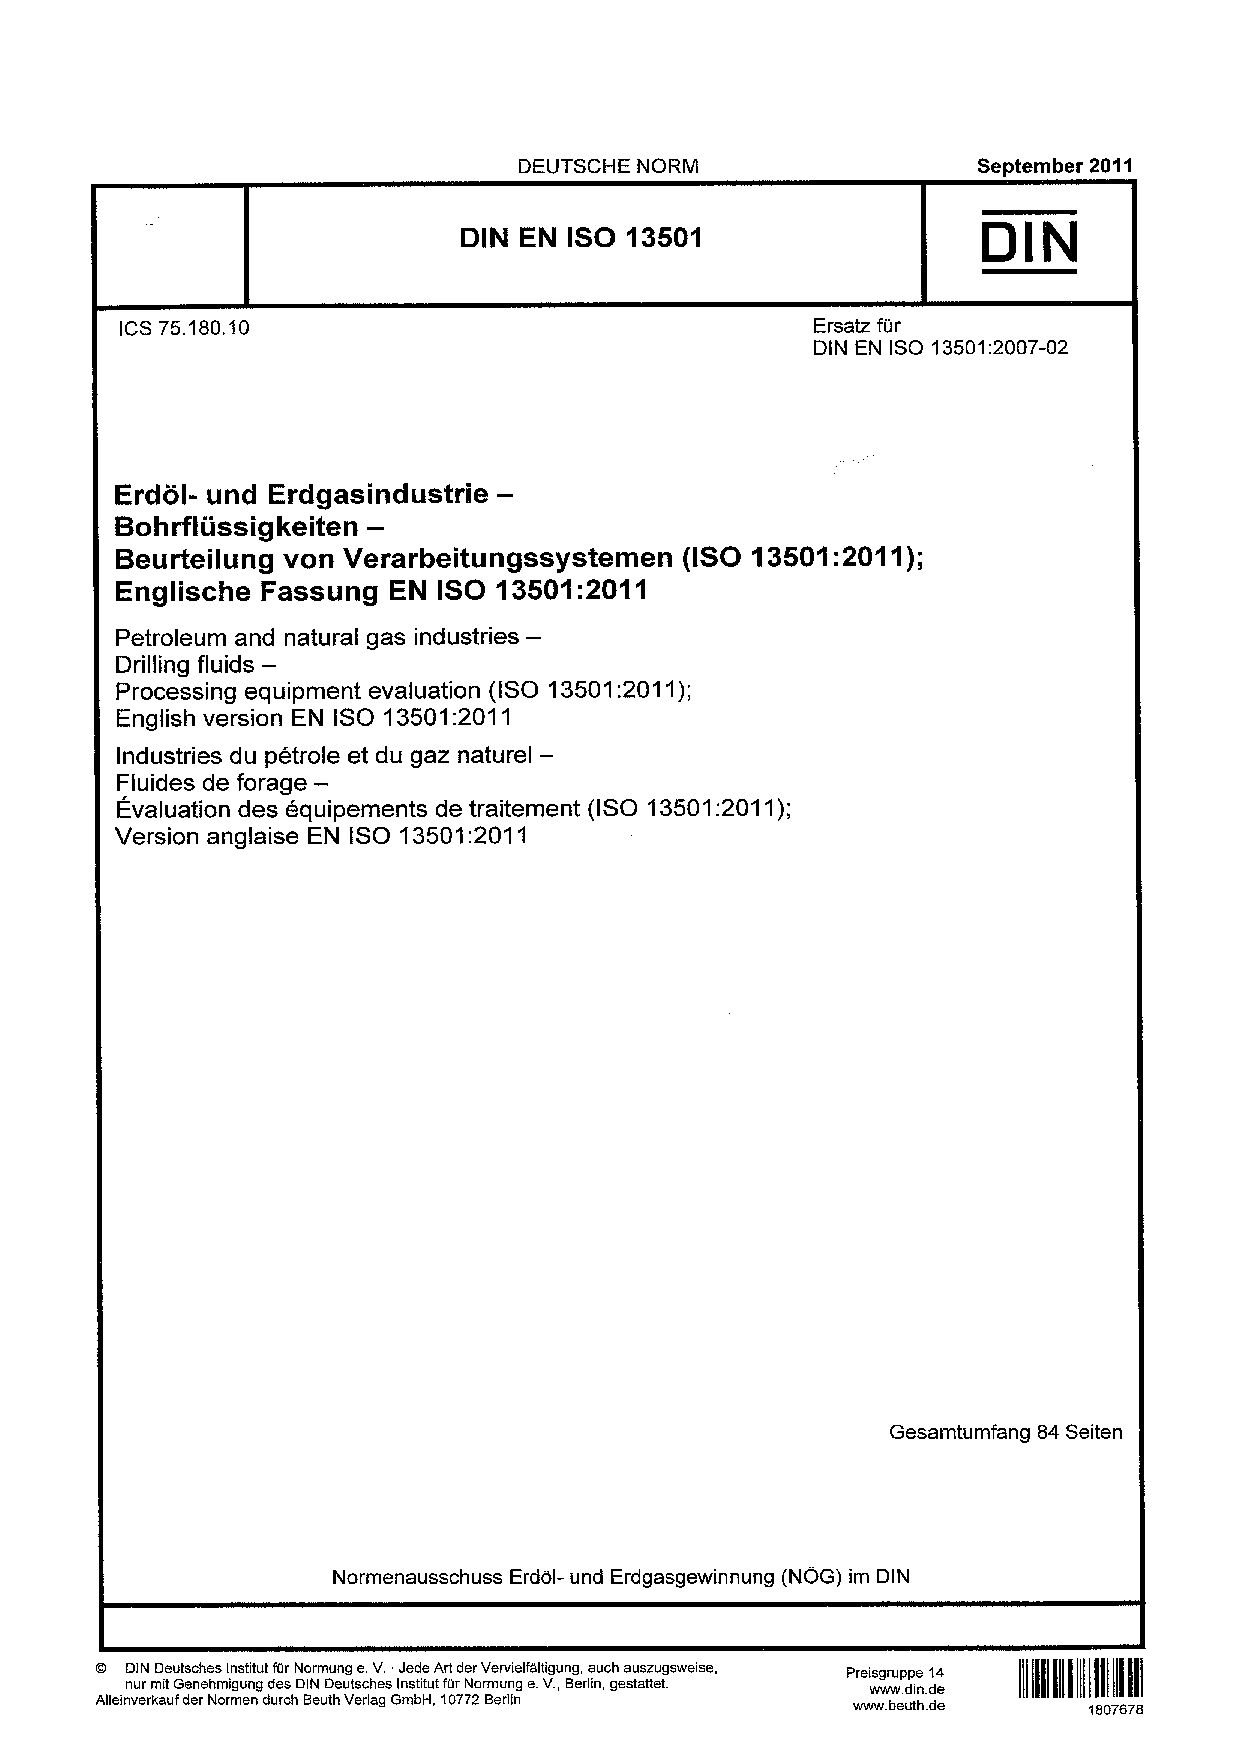 DIN EN ISO 13501:2011封面图